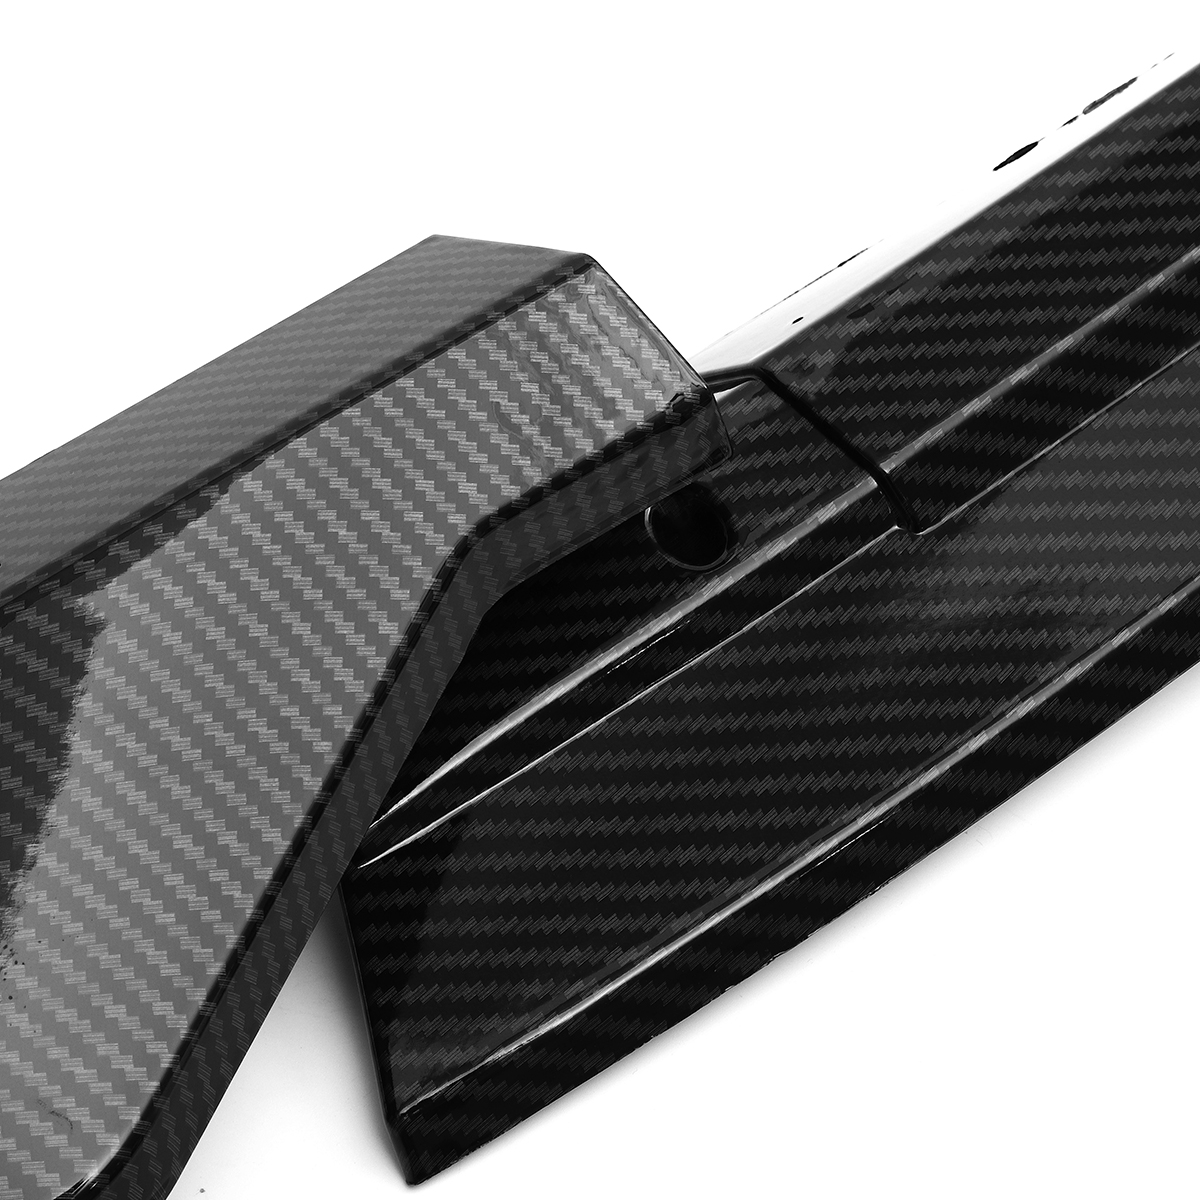 3Pcs Carbon Fiber Front Bumper Protector Lip Spoiler Covers Trim for Mercedes Vito 2015-2019